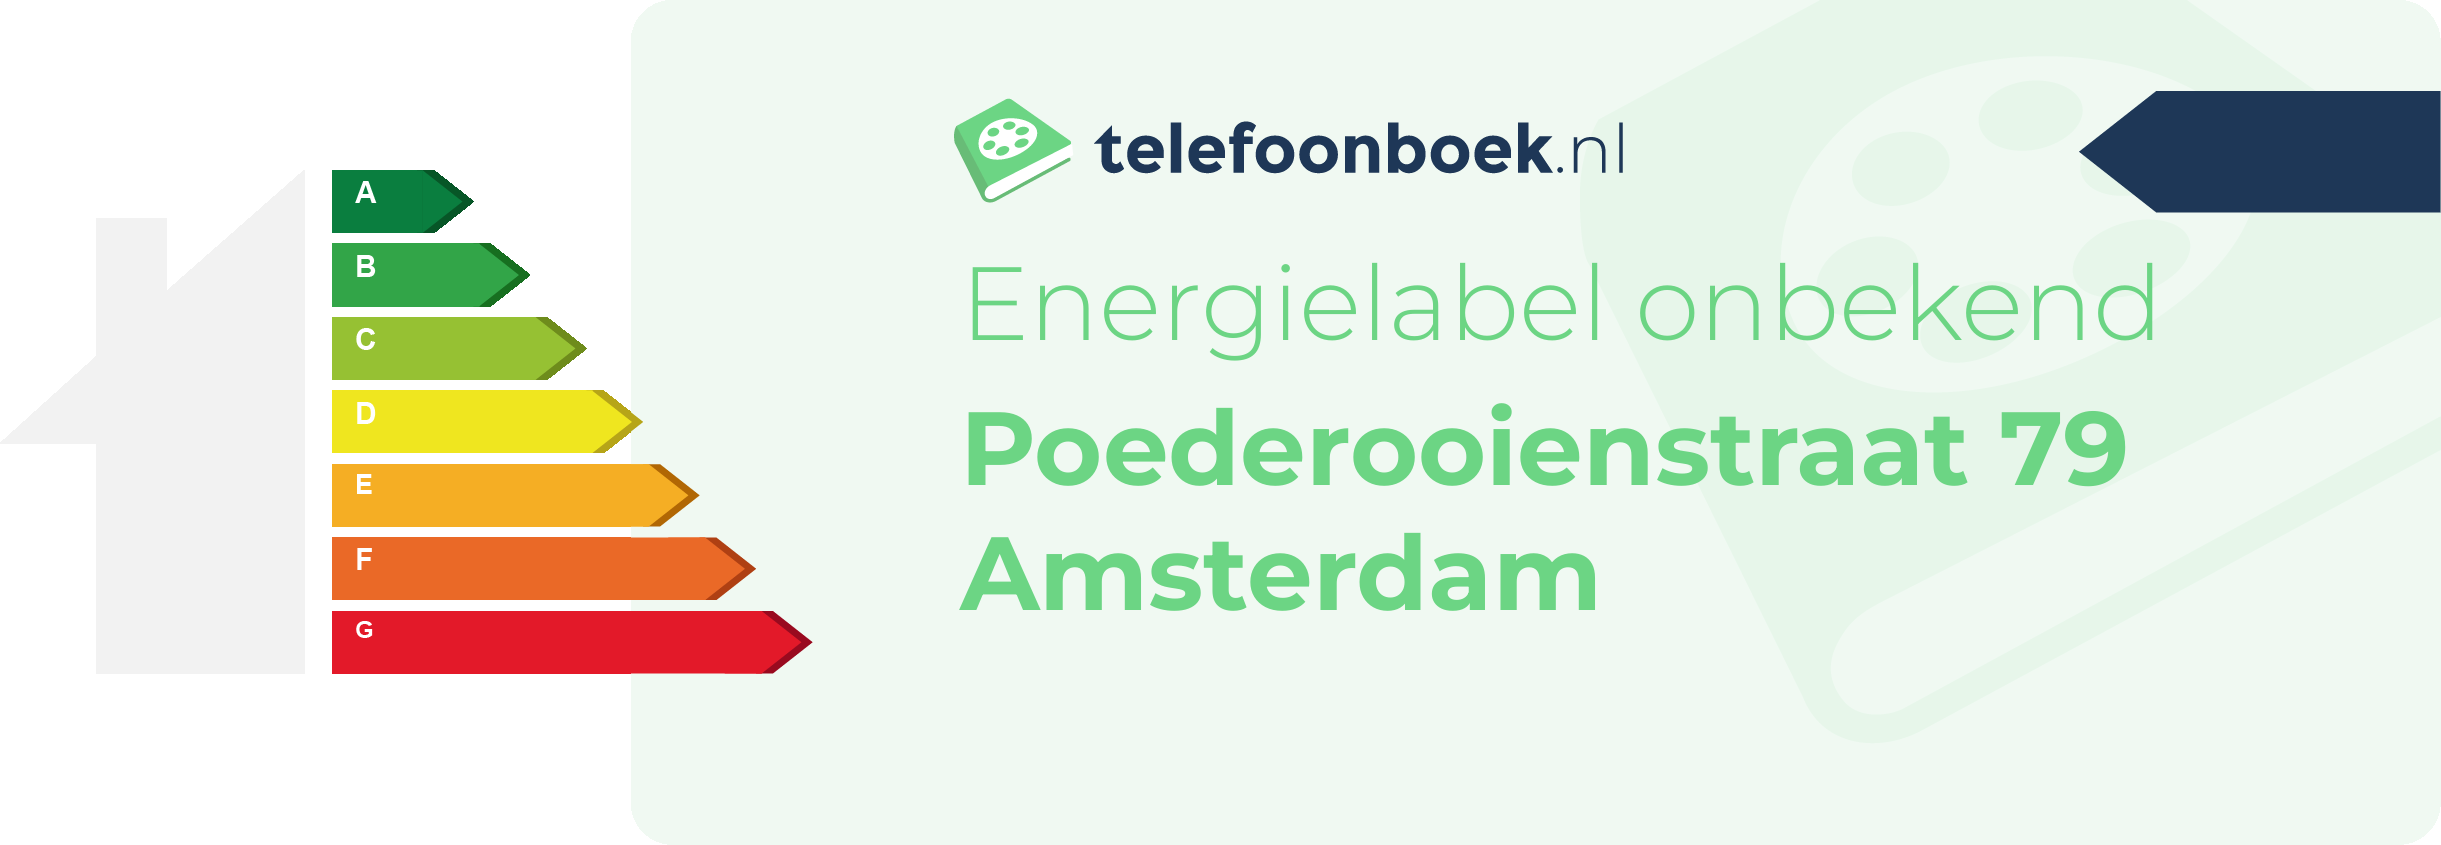 Energielabel Poederooienstraat 79 Amsterdam